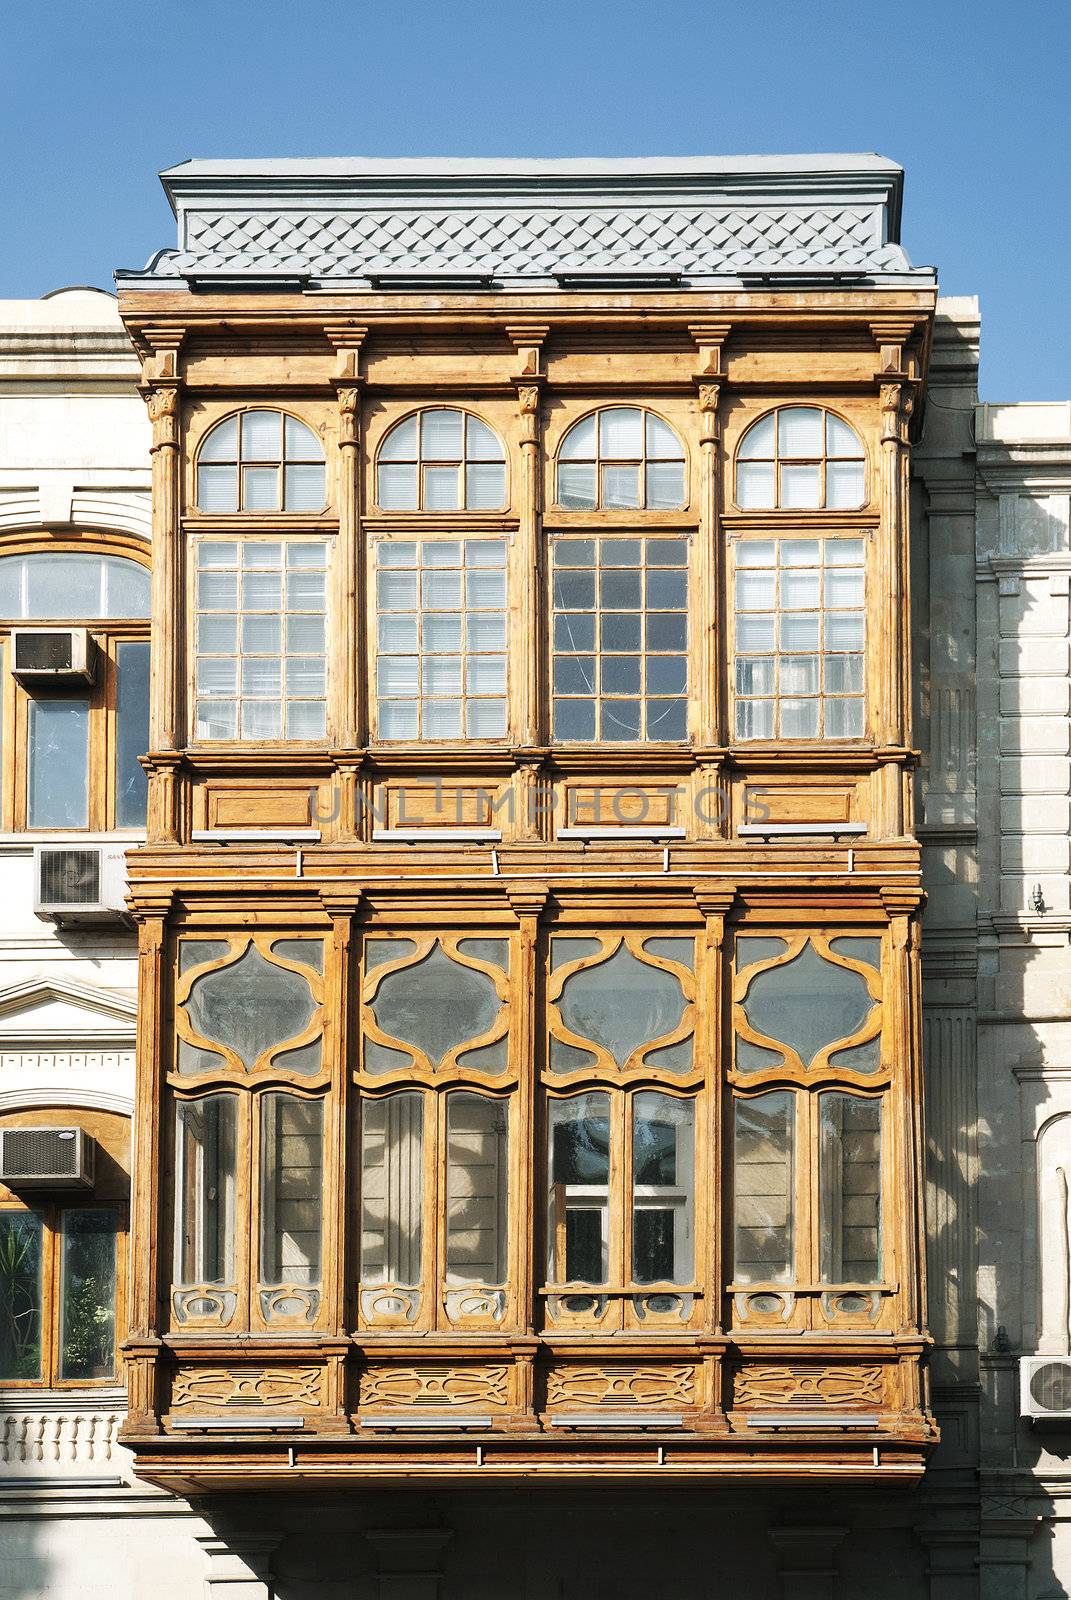 traditional balcony window architecture detail baku azerbaijan  by jackmalipan